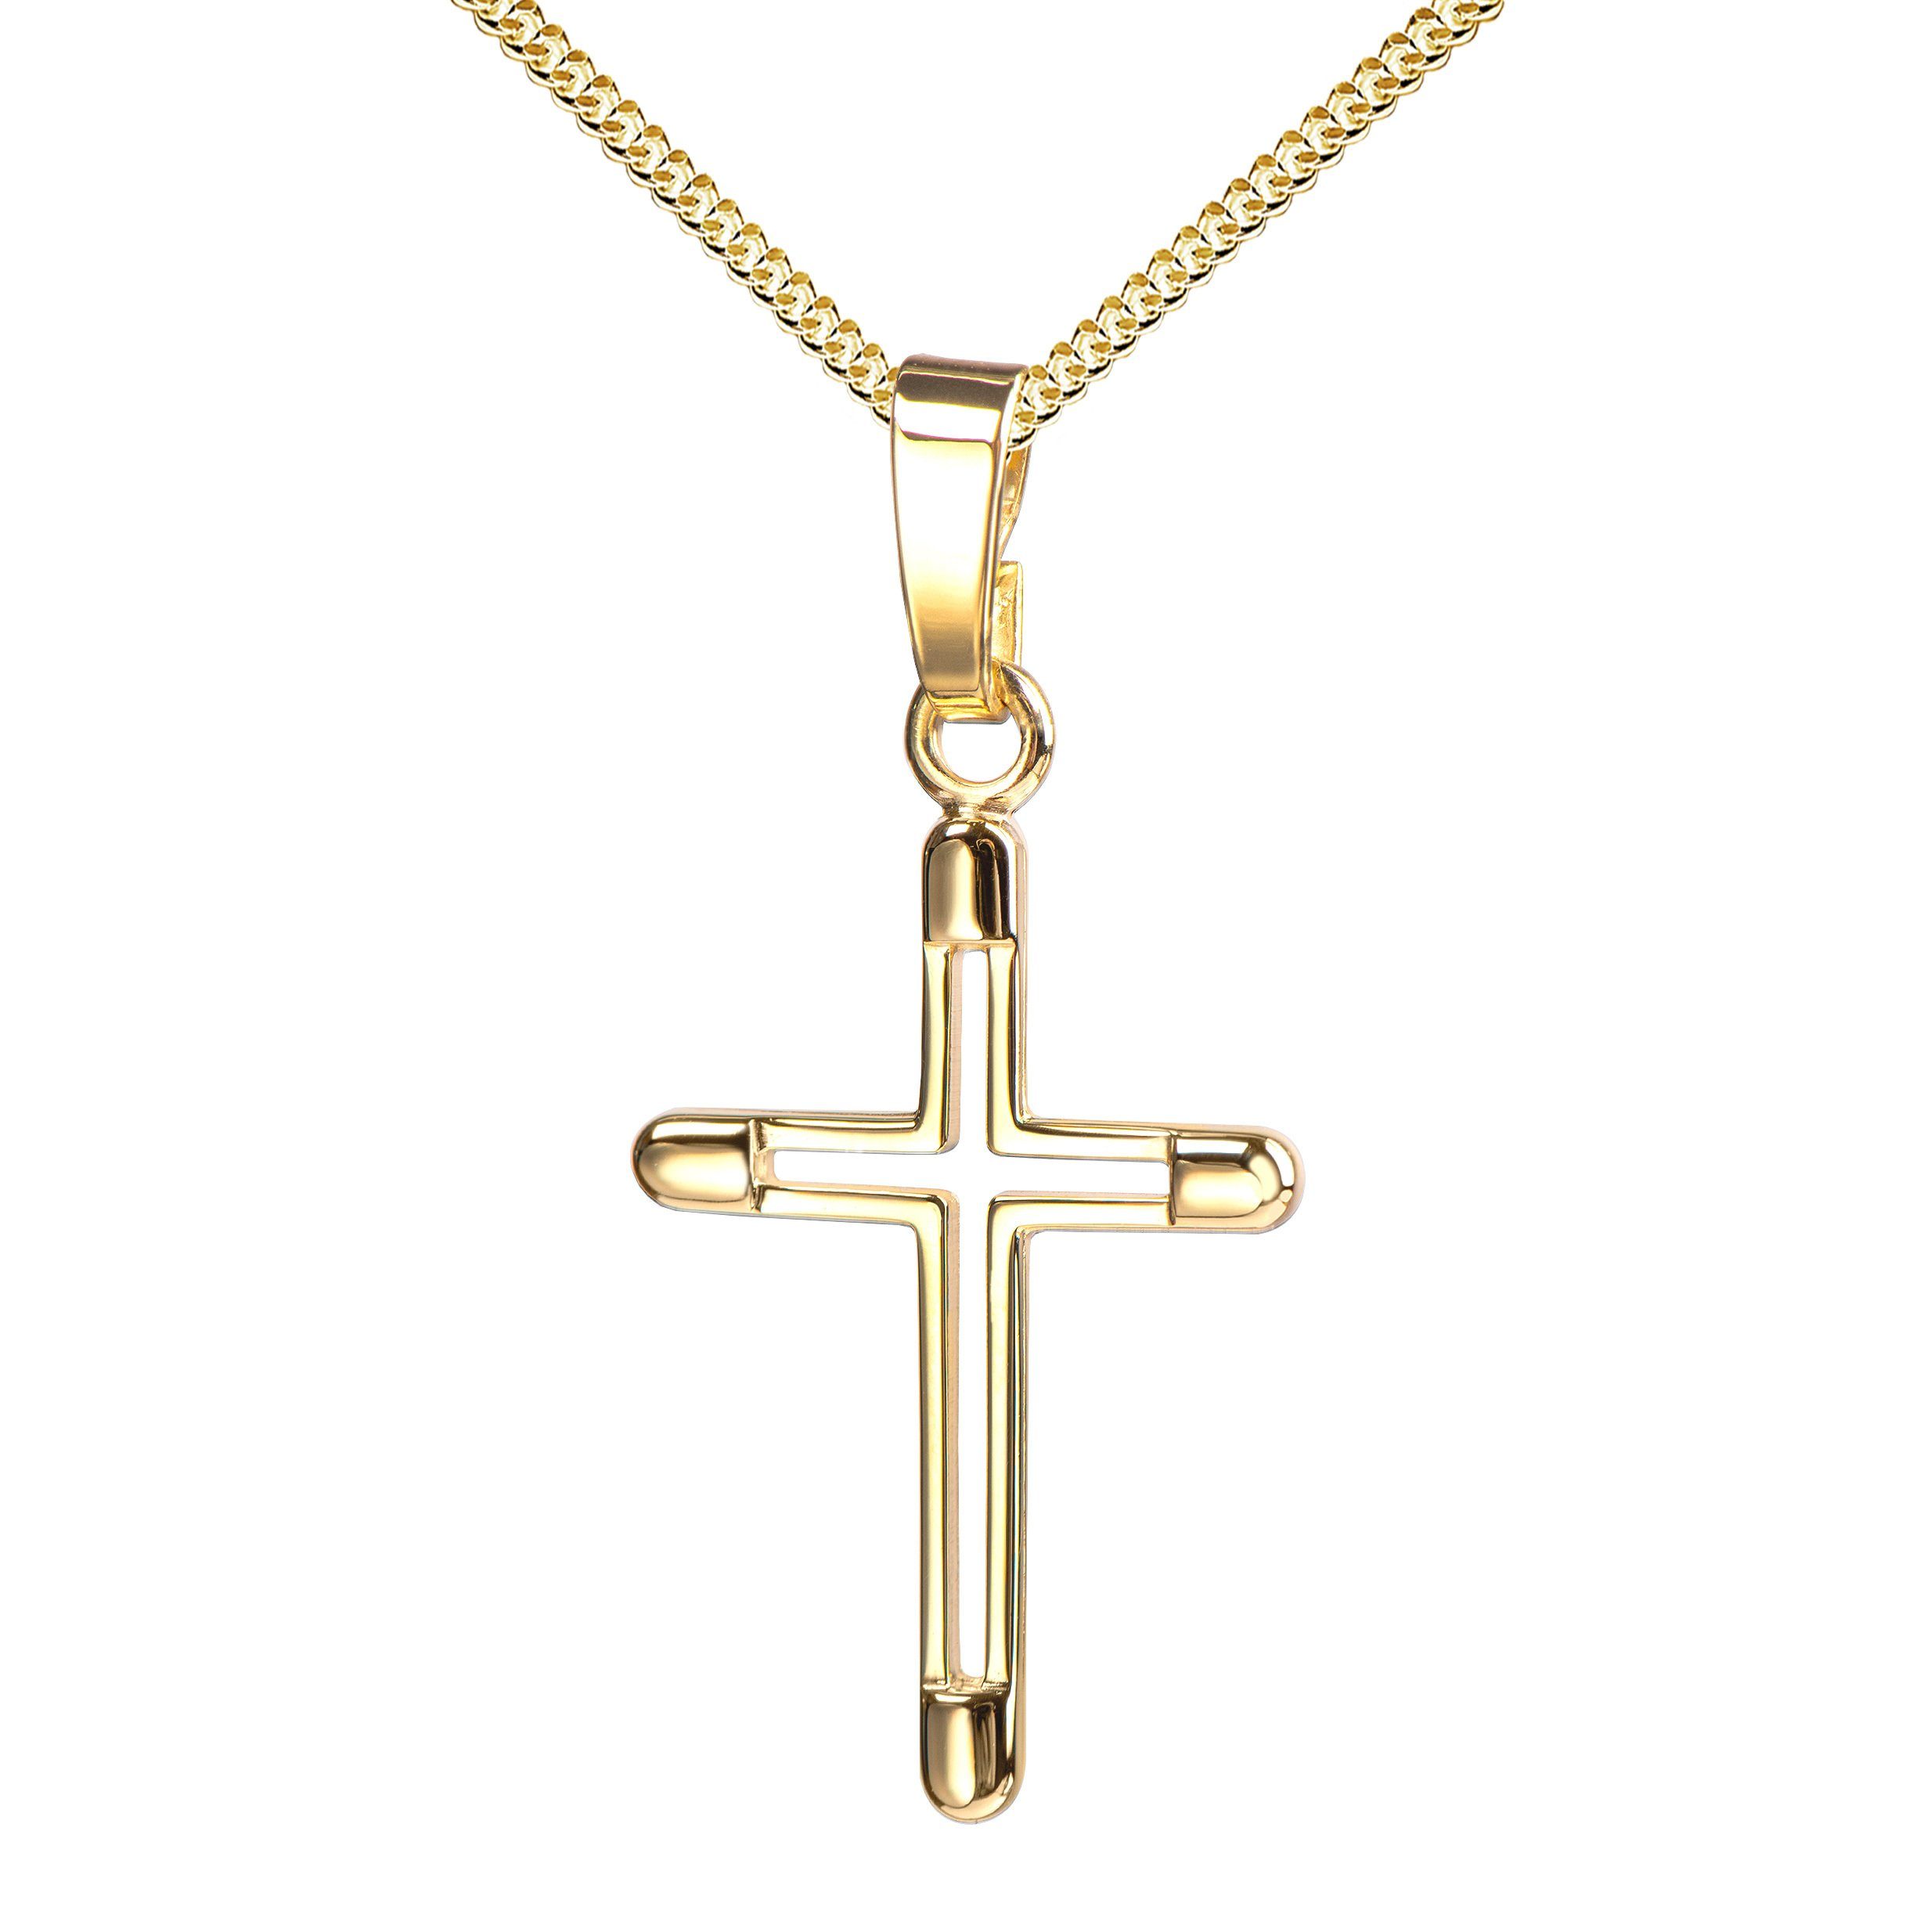 JEVELION Kreuzkette kleiner Kreuzanhänger 333 Goldkreuz - Made in Germany (Goldanhänger, für Damen und Kinder), Mit Kette vergoldet- Länge wählbar 36 - 70 cm oder ohne Kette.